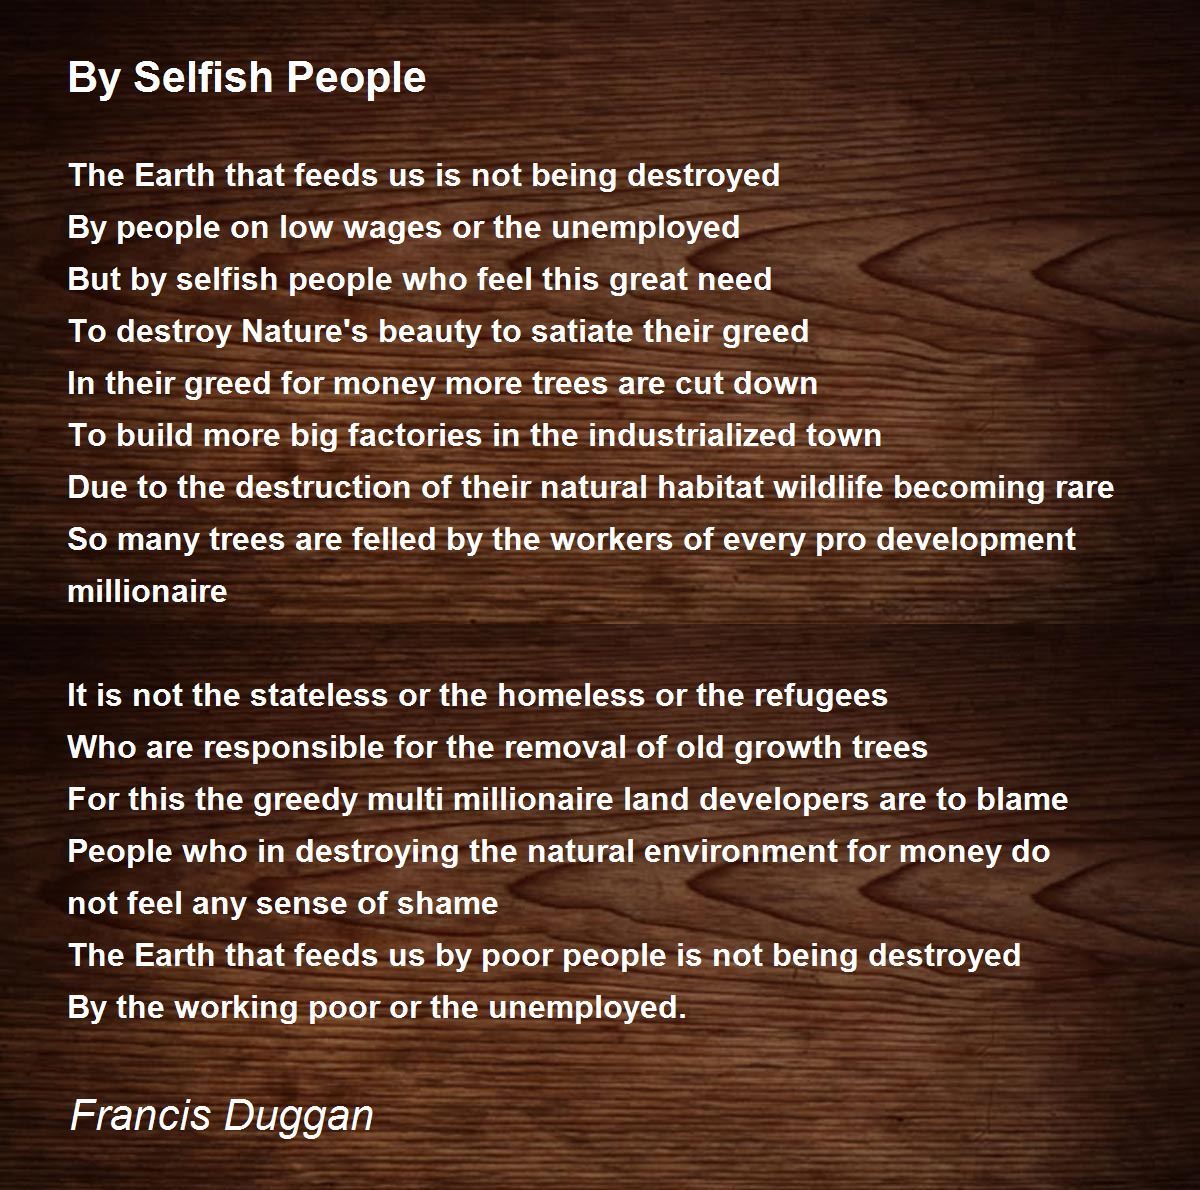 By Selfish People - By Selfish People Poem by Francis Duggan